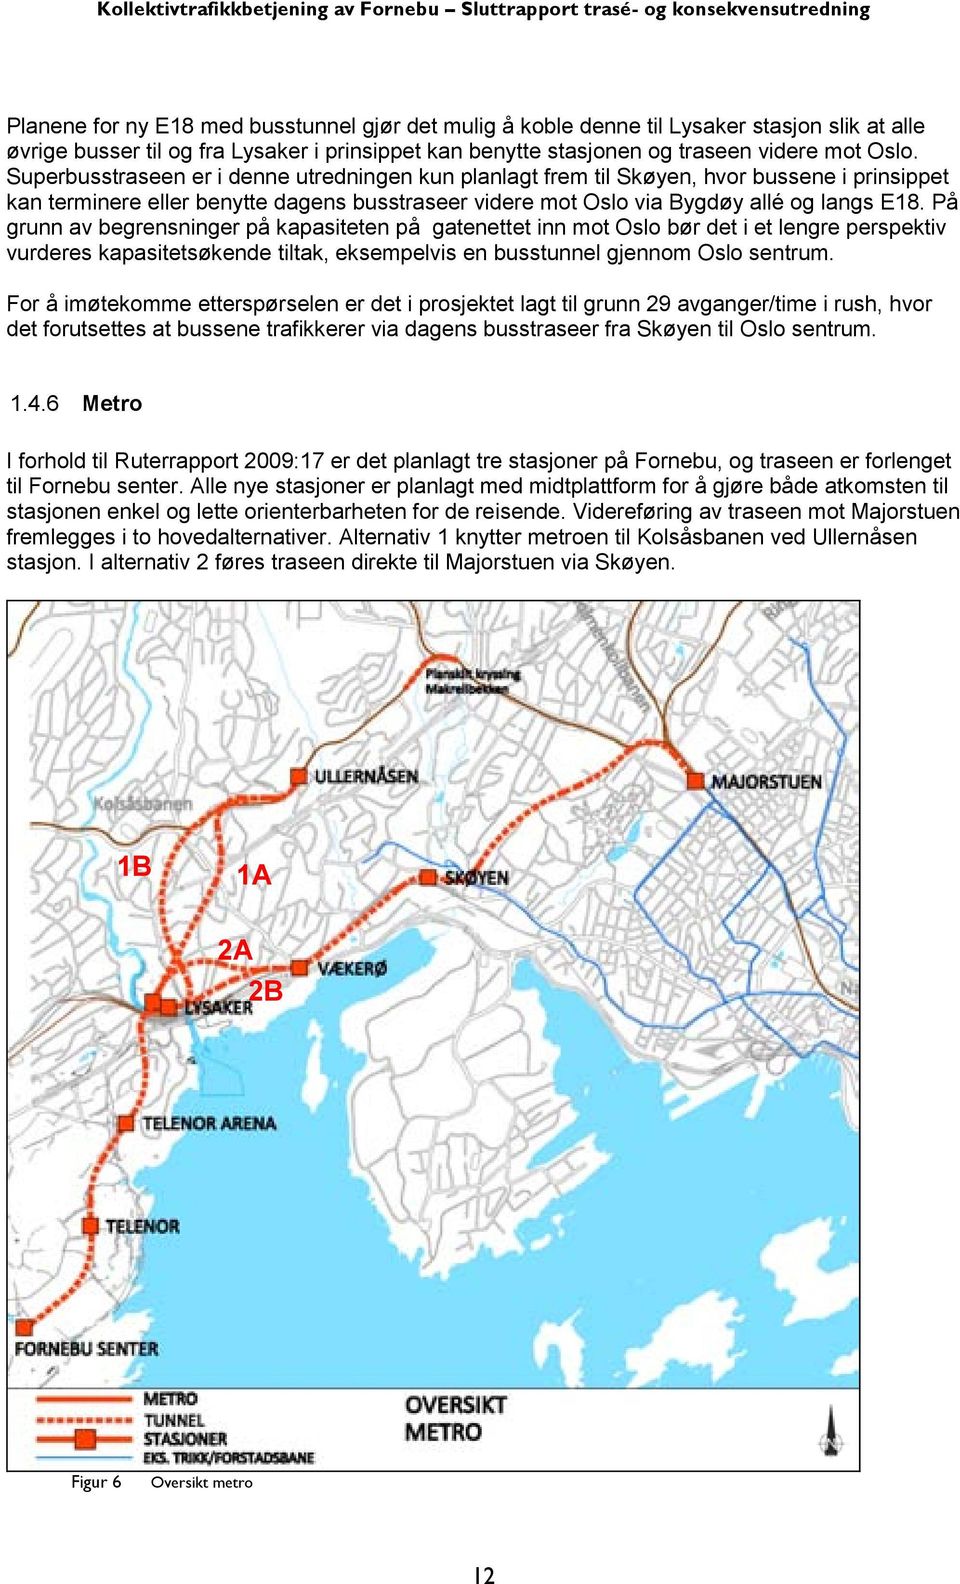 På grunn av begrensninger på kapasiteten på gatenettet inn mot Oslo bør det i et lengre perspektiv vurderes kapasitetsøkende tiltak, eksempelvis en busstunnel gjennom Oslo sentrum.